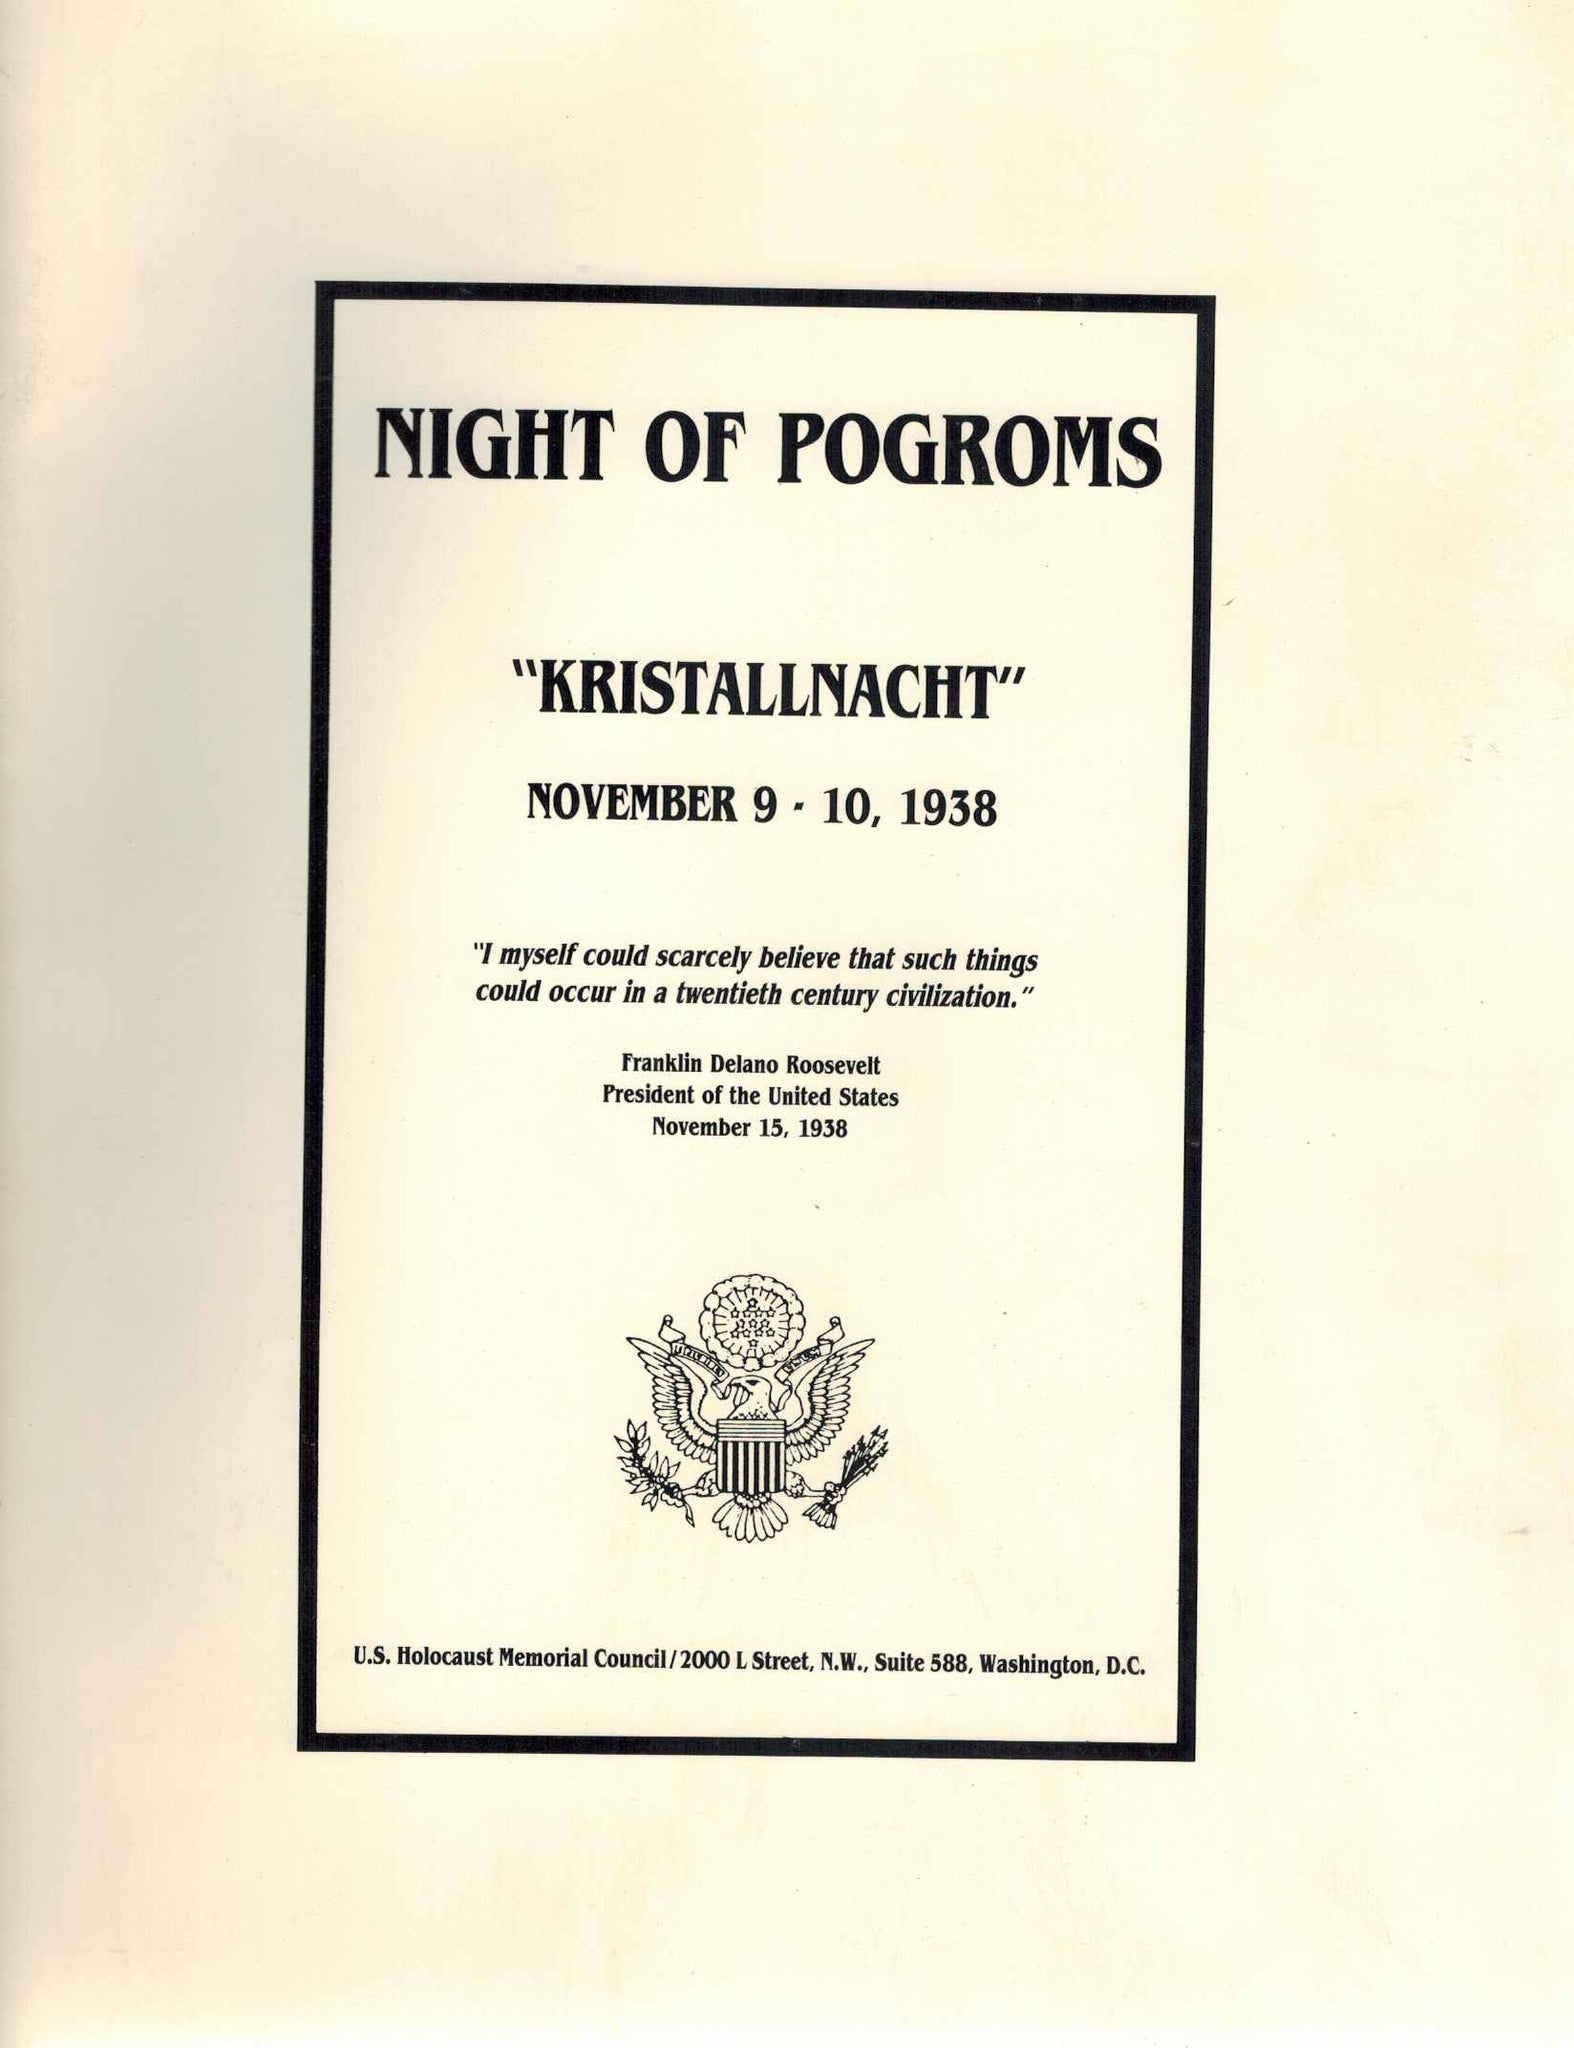 Night of pogroms